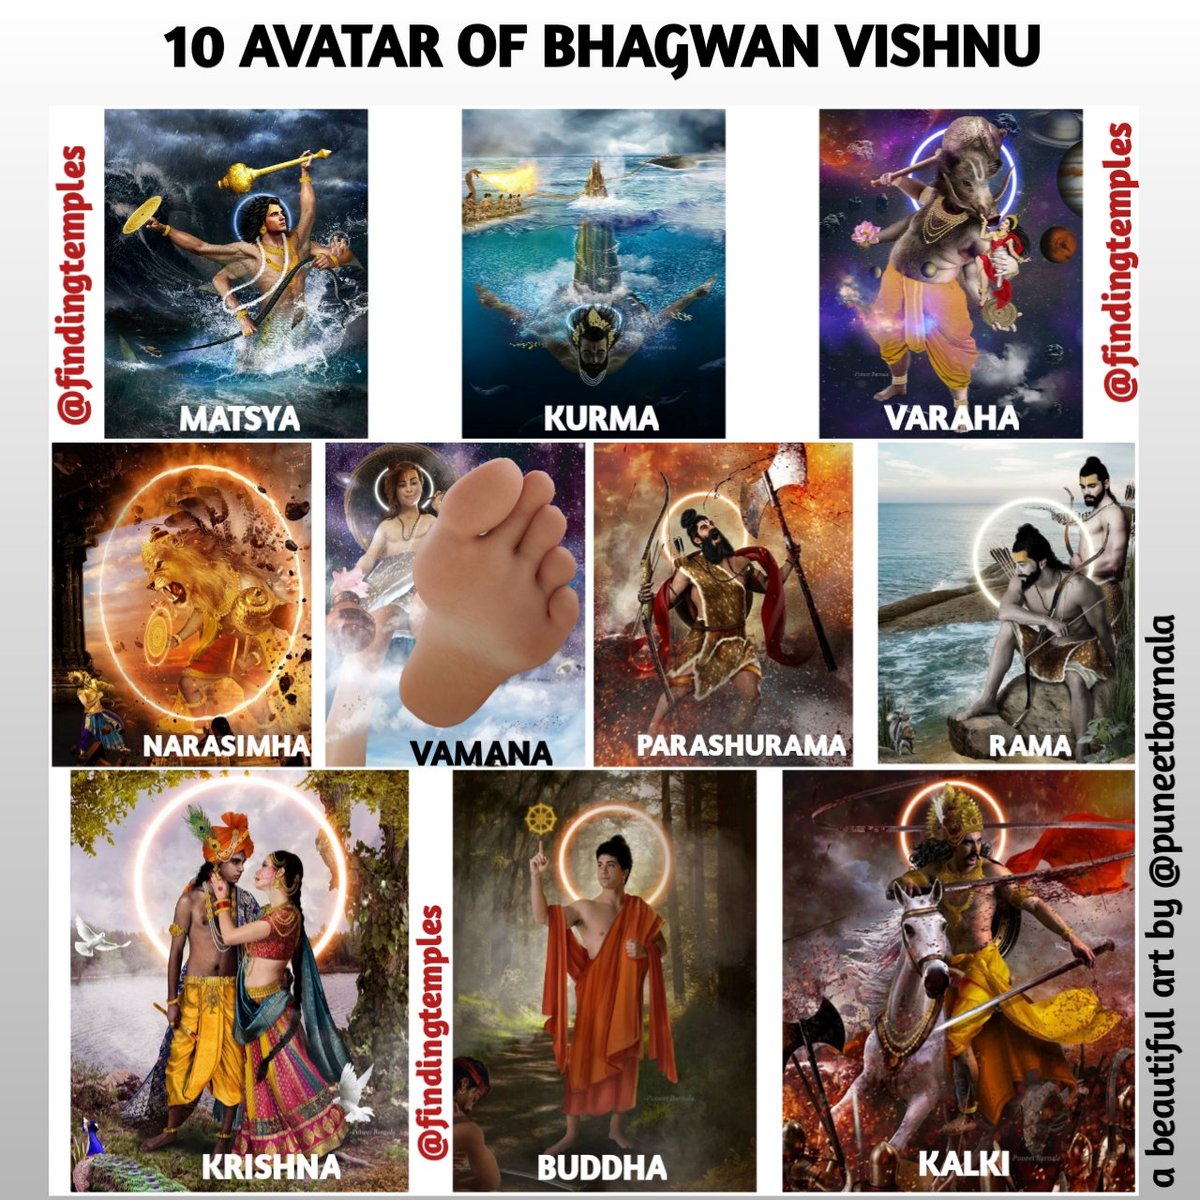 The 10 Avatars of Lord Vishnu